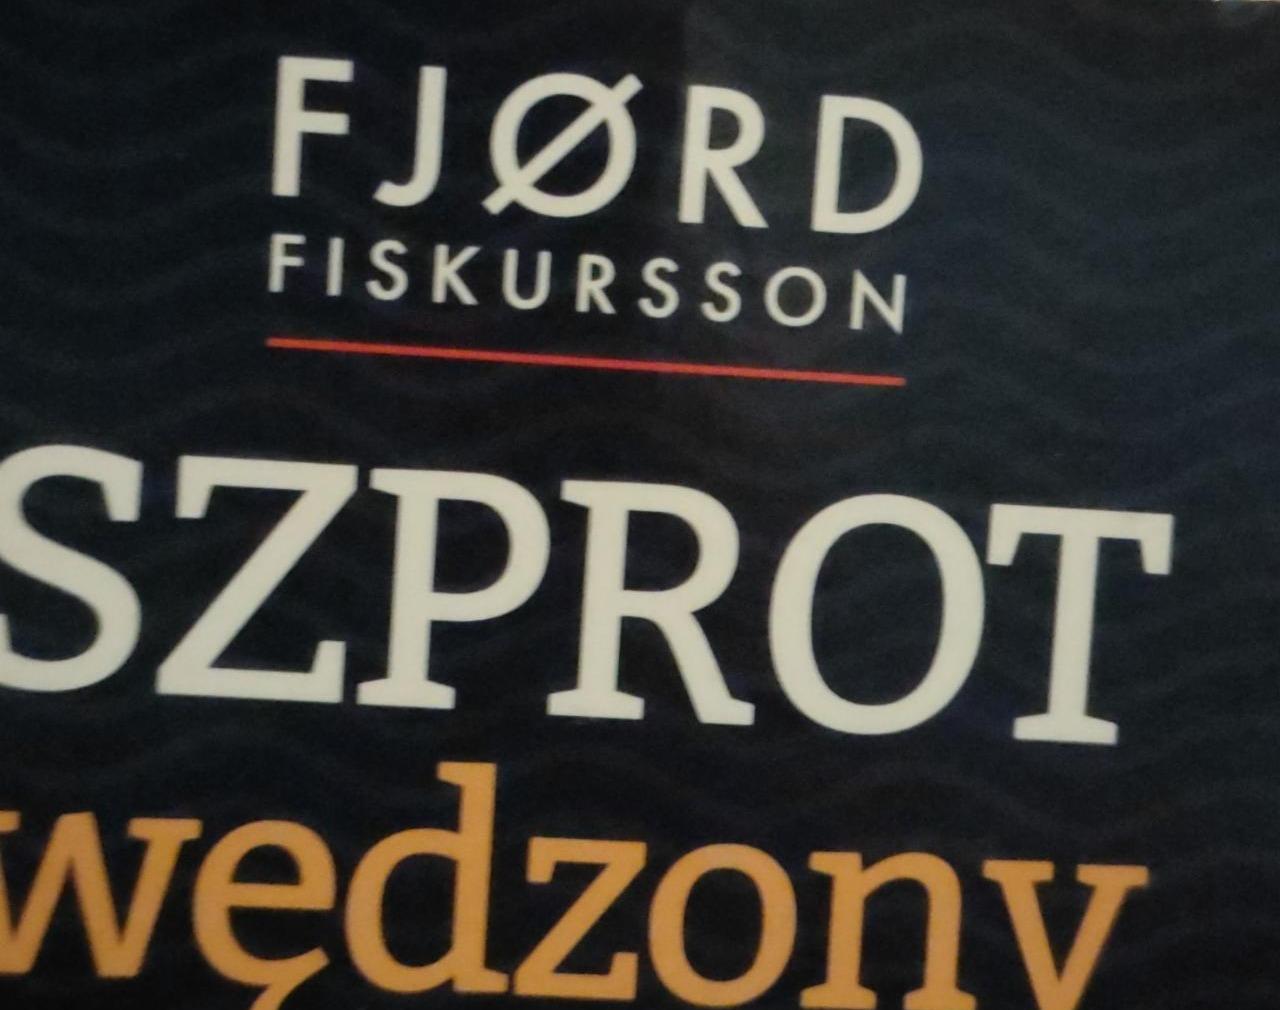 Zdjęcia - szprot wędzony Fjord Fiskursson